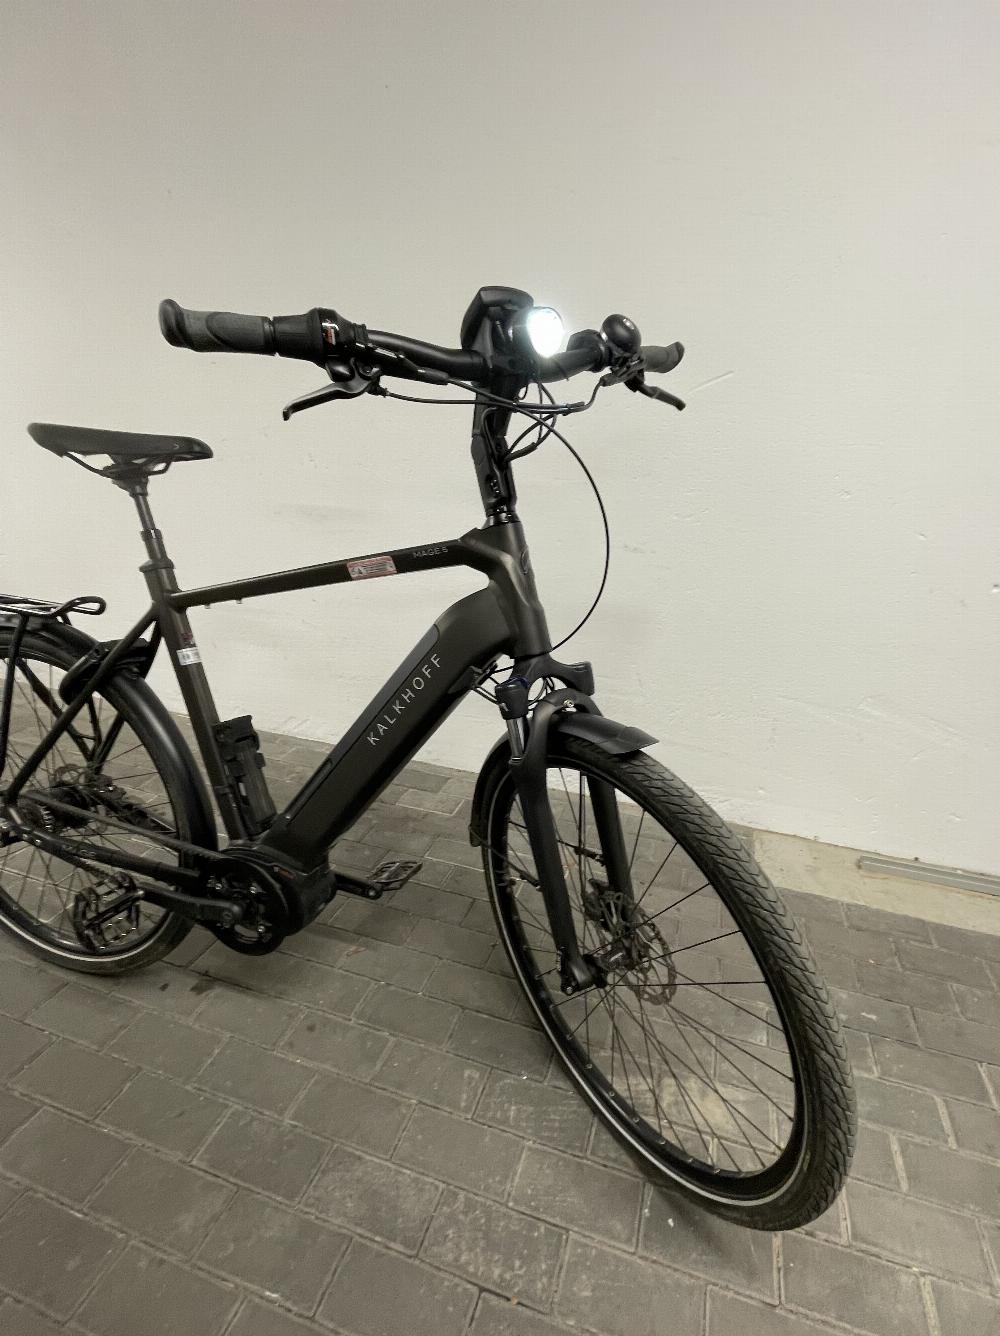 Fahrrad verkaufen KALKHOFF IMAGE 5.B BELT Ankauf